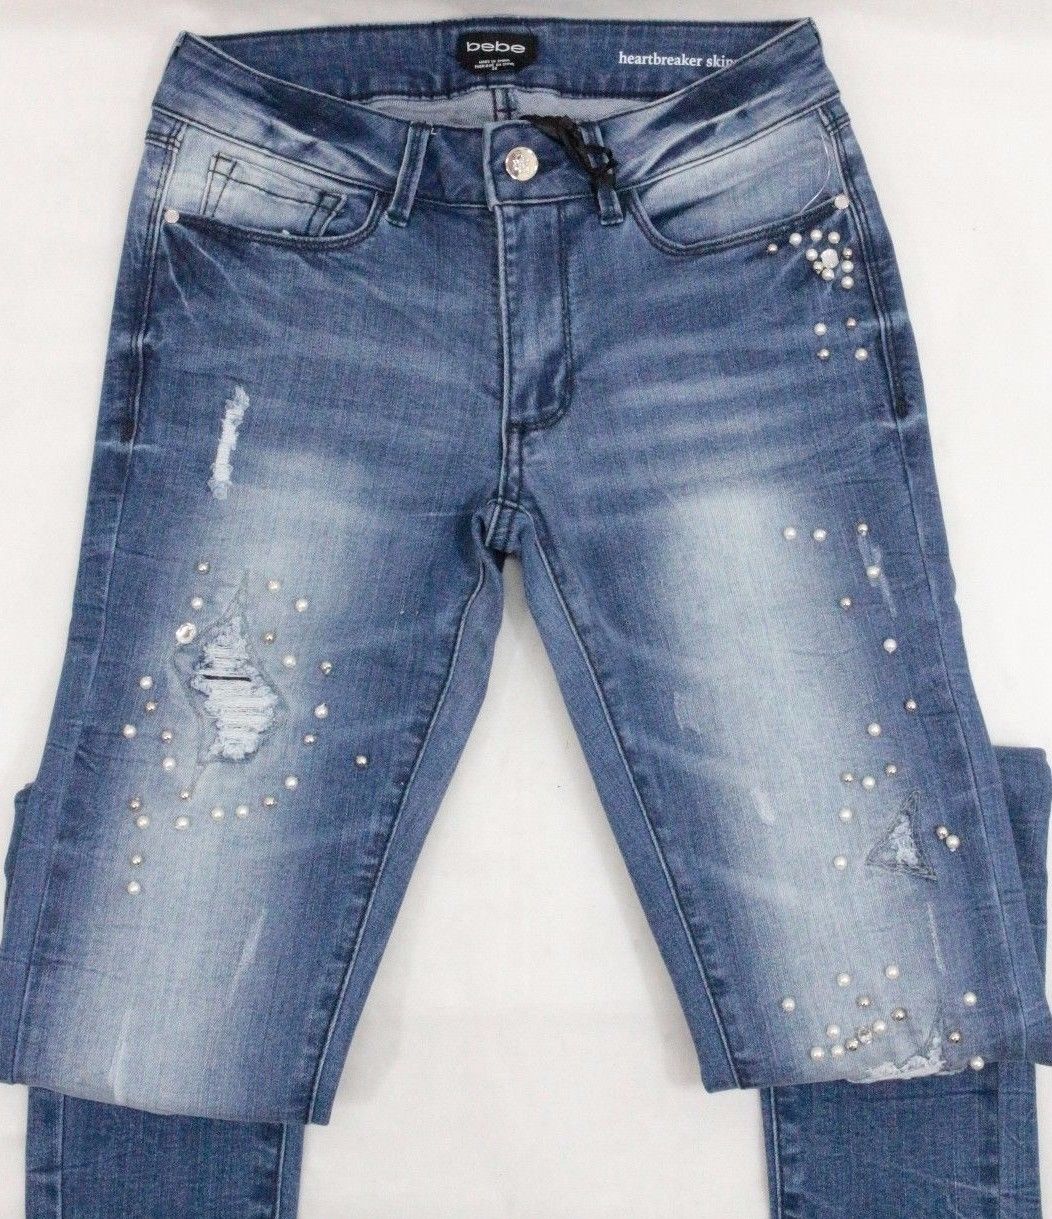 bebe embellished jeans